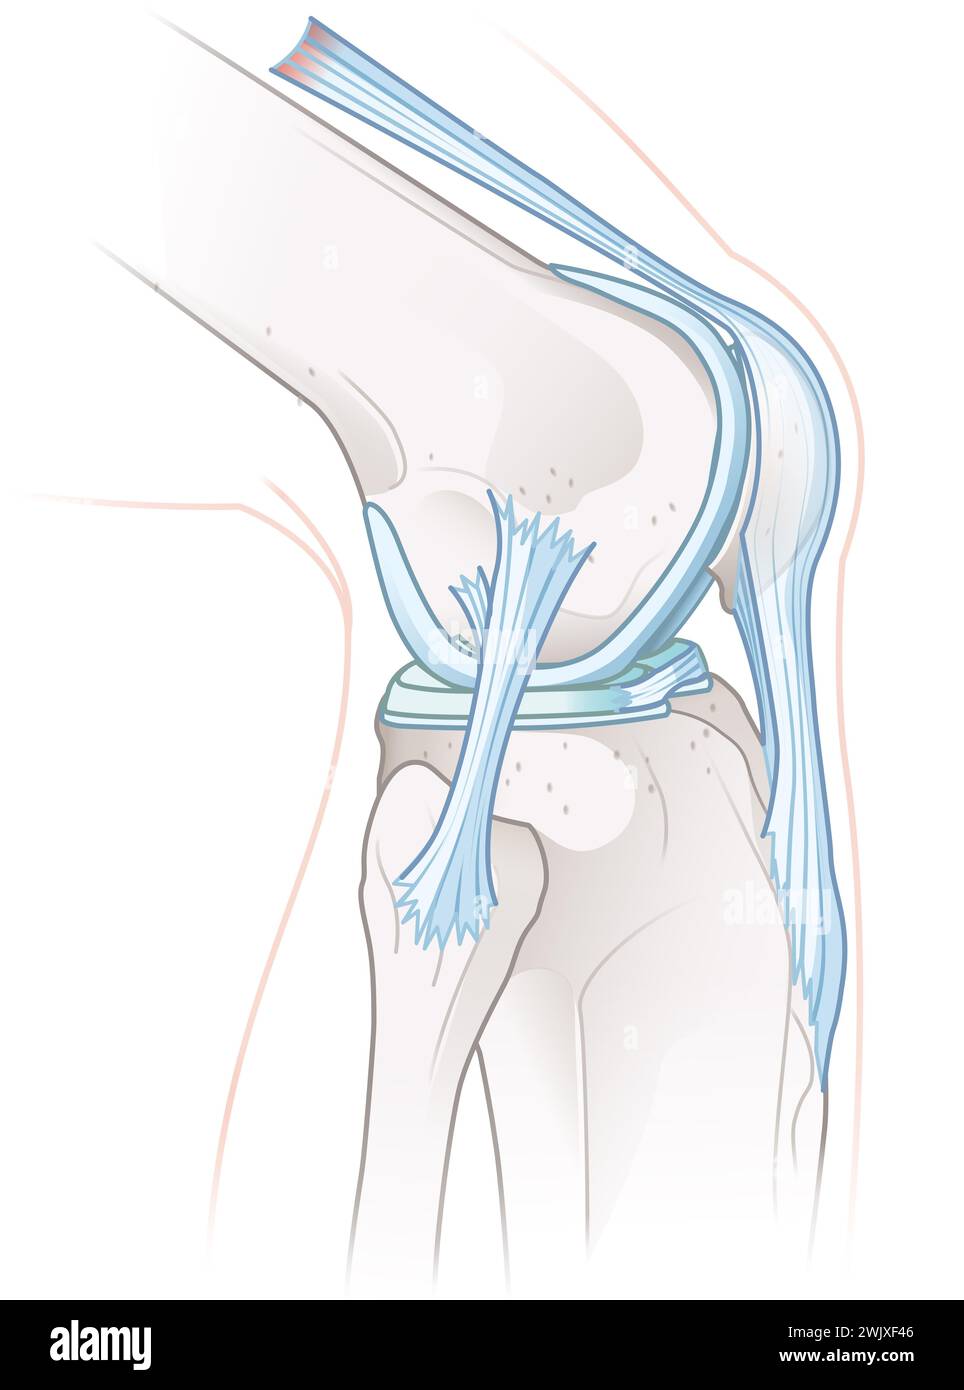 Illustrazione che mostra l'anatomia sana dell'articolazione del ginocchio. Foto Stock